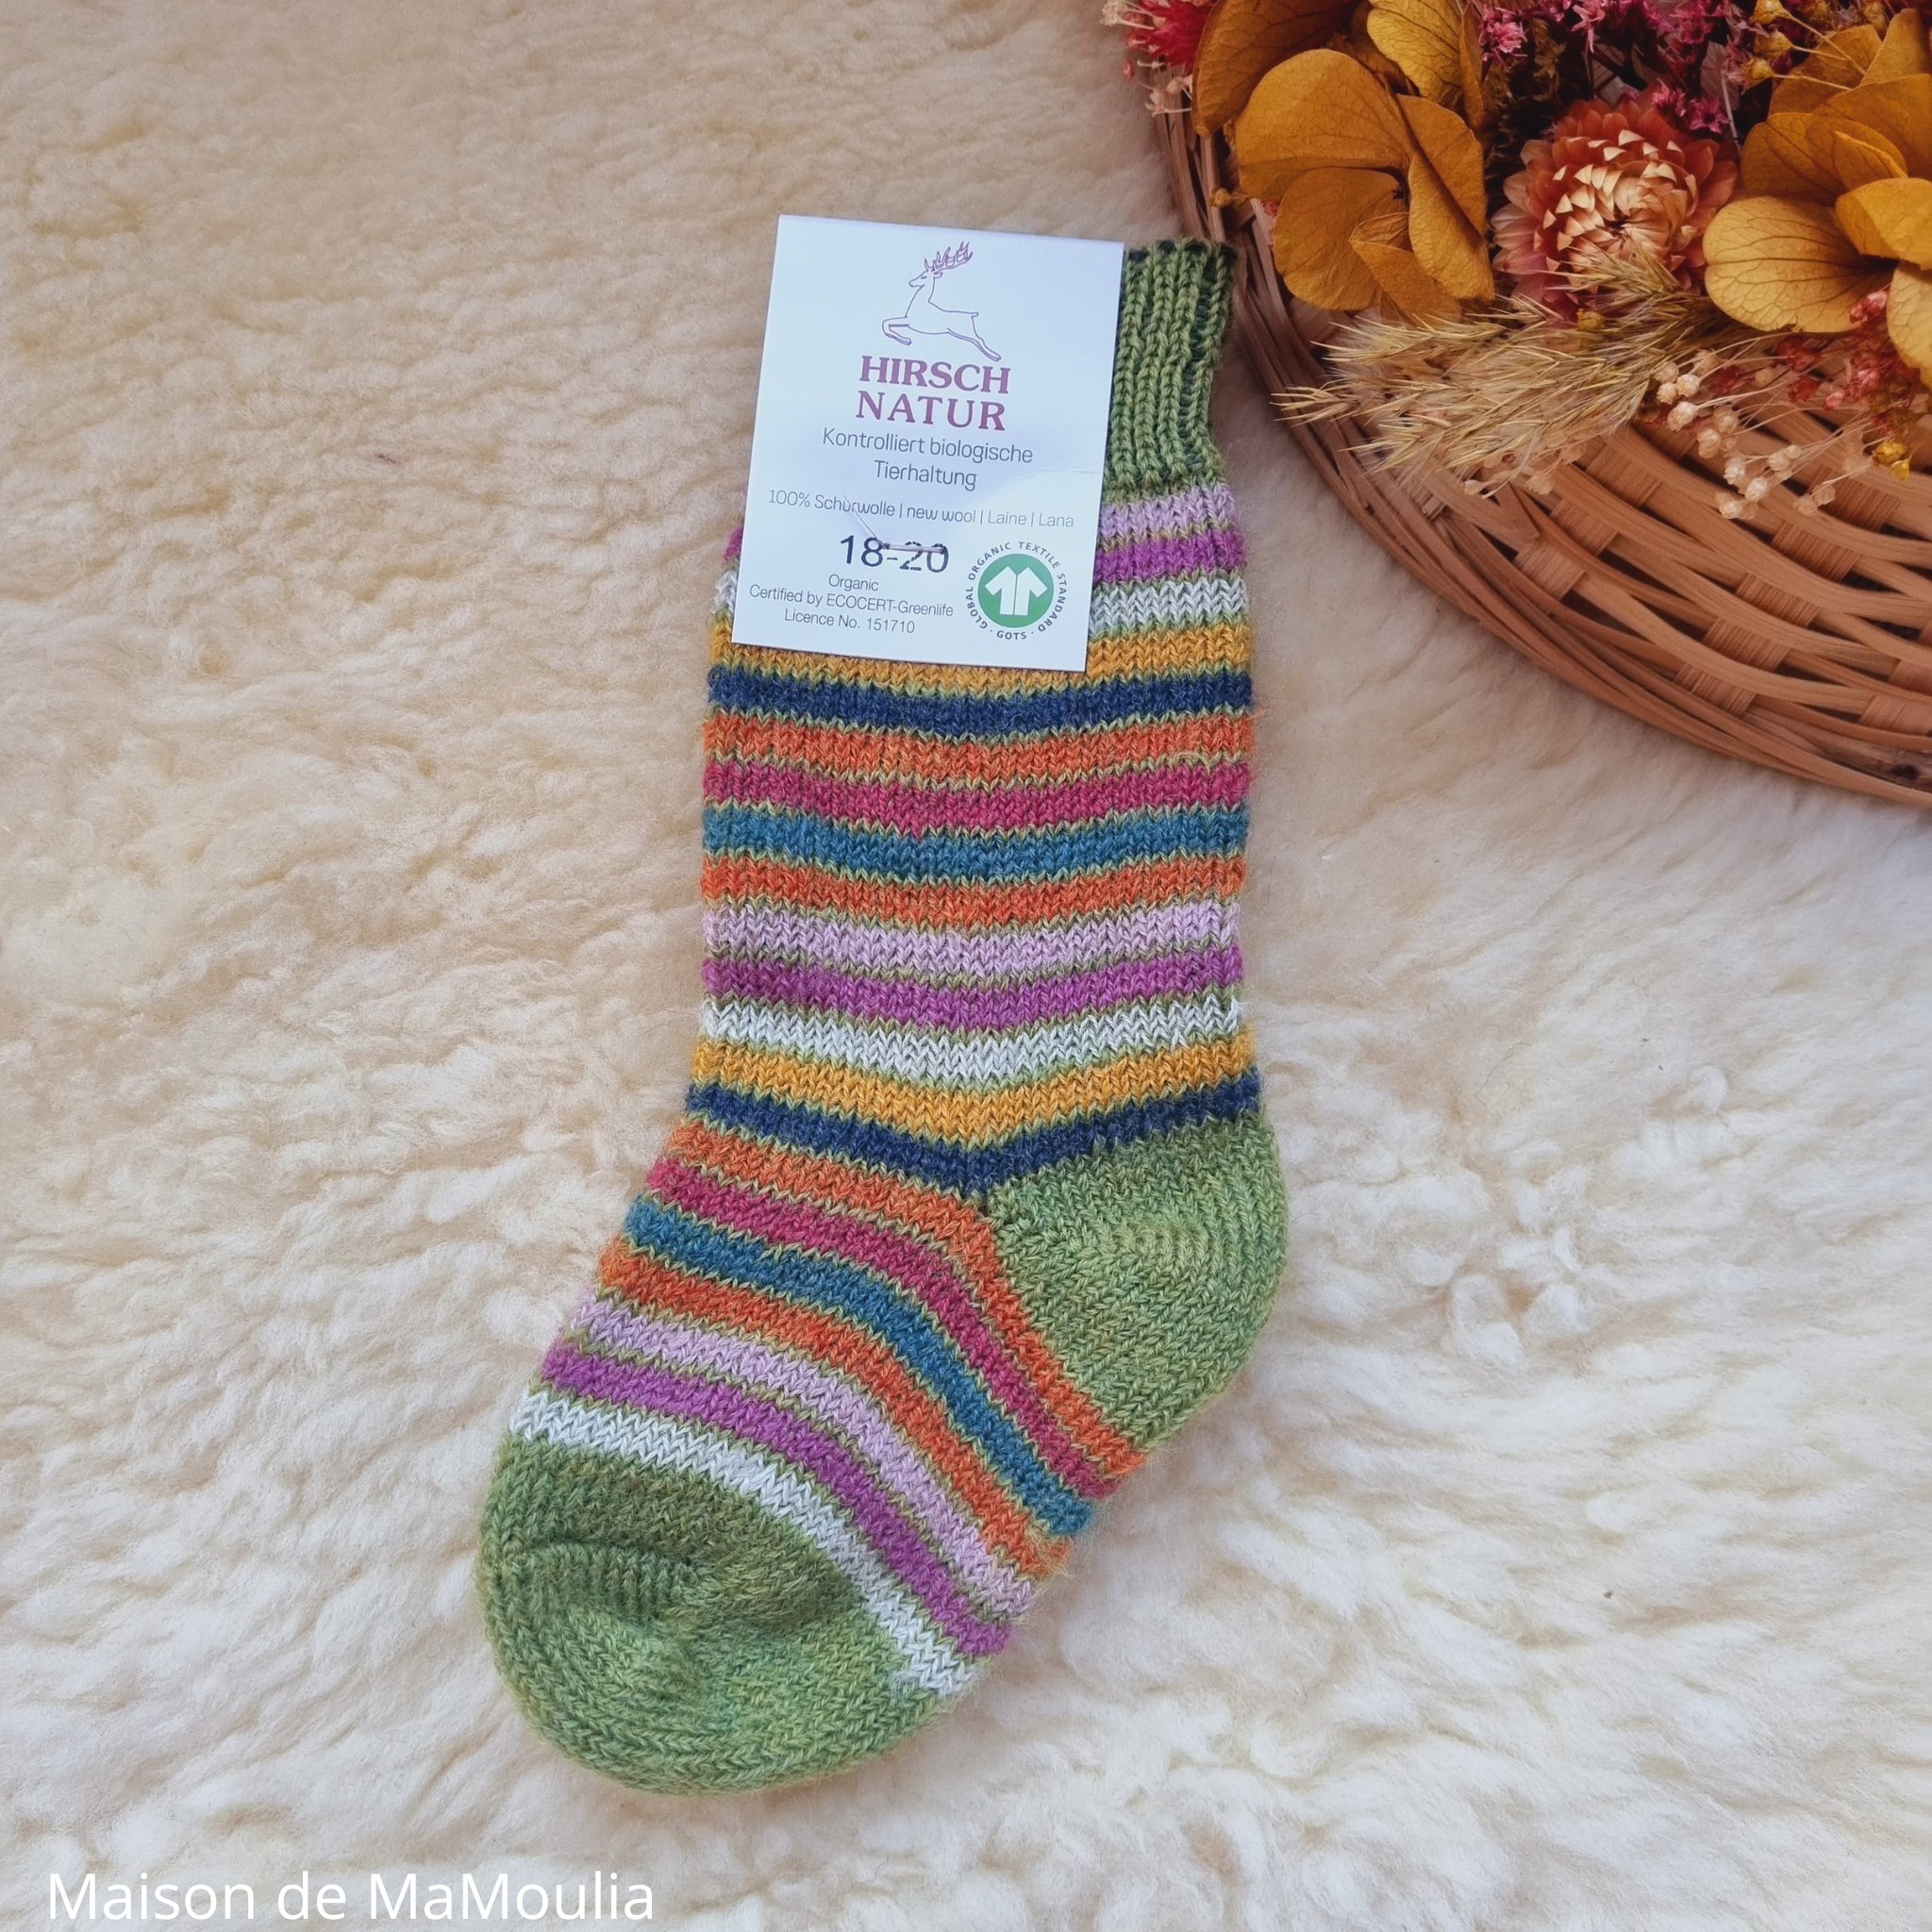 016K-chaussettes-pure-laine-bio-ecologique-hirsch-natur-maison-de-mamoulia-rayures-enfant-vert